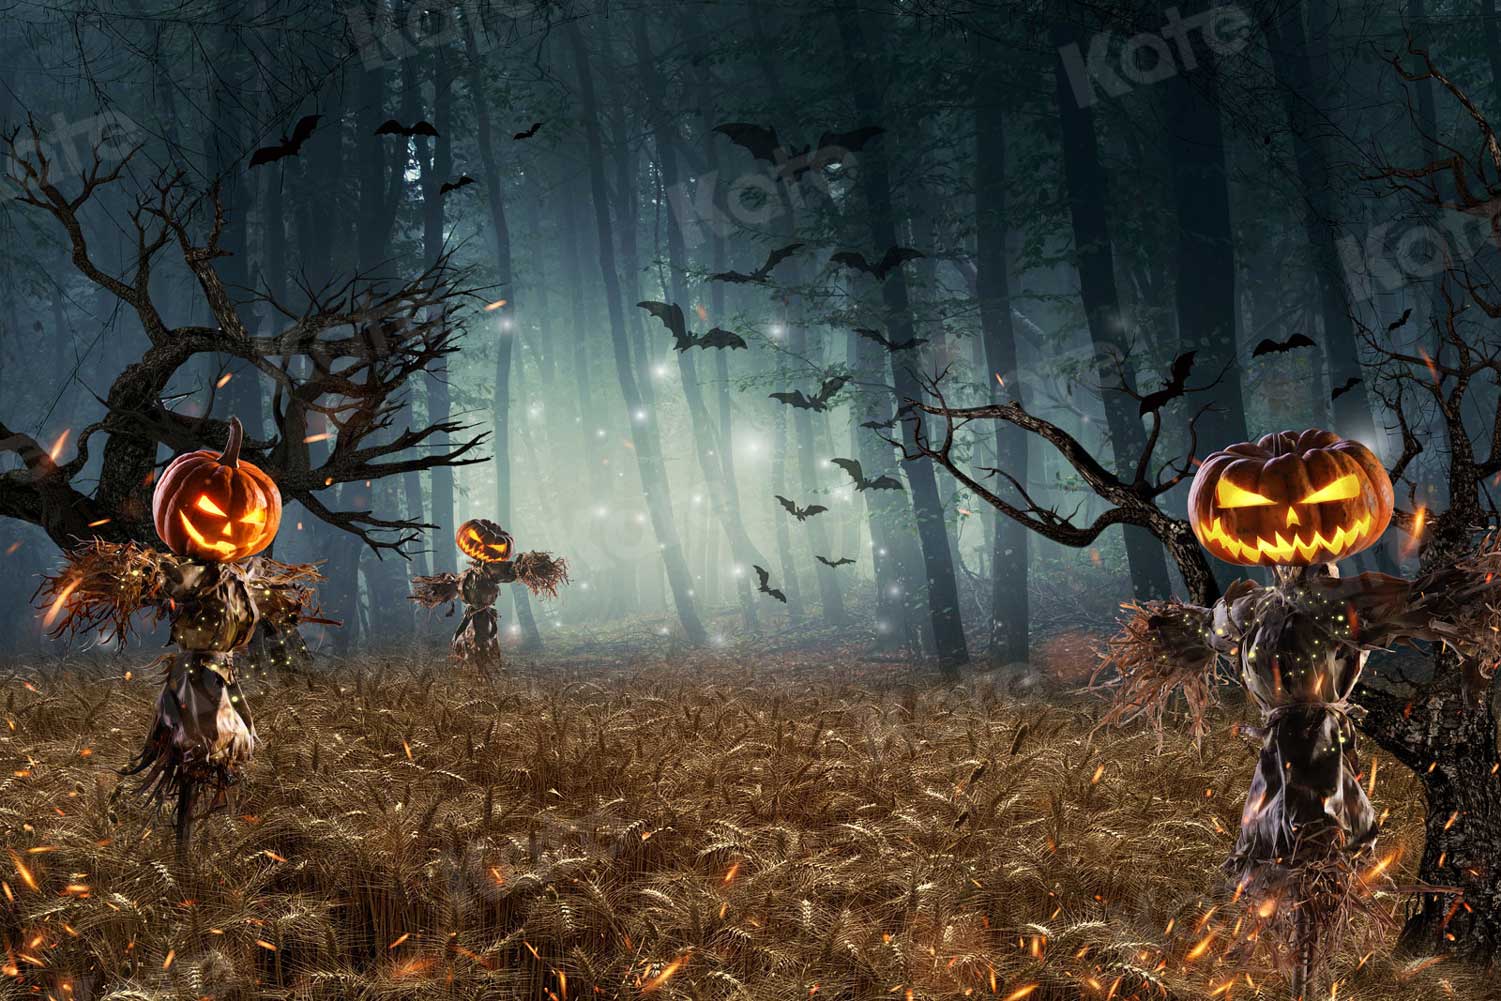 Kate Halloween citrouille toile de fond forêt d'automne pour la photographie